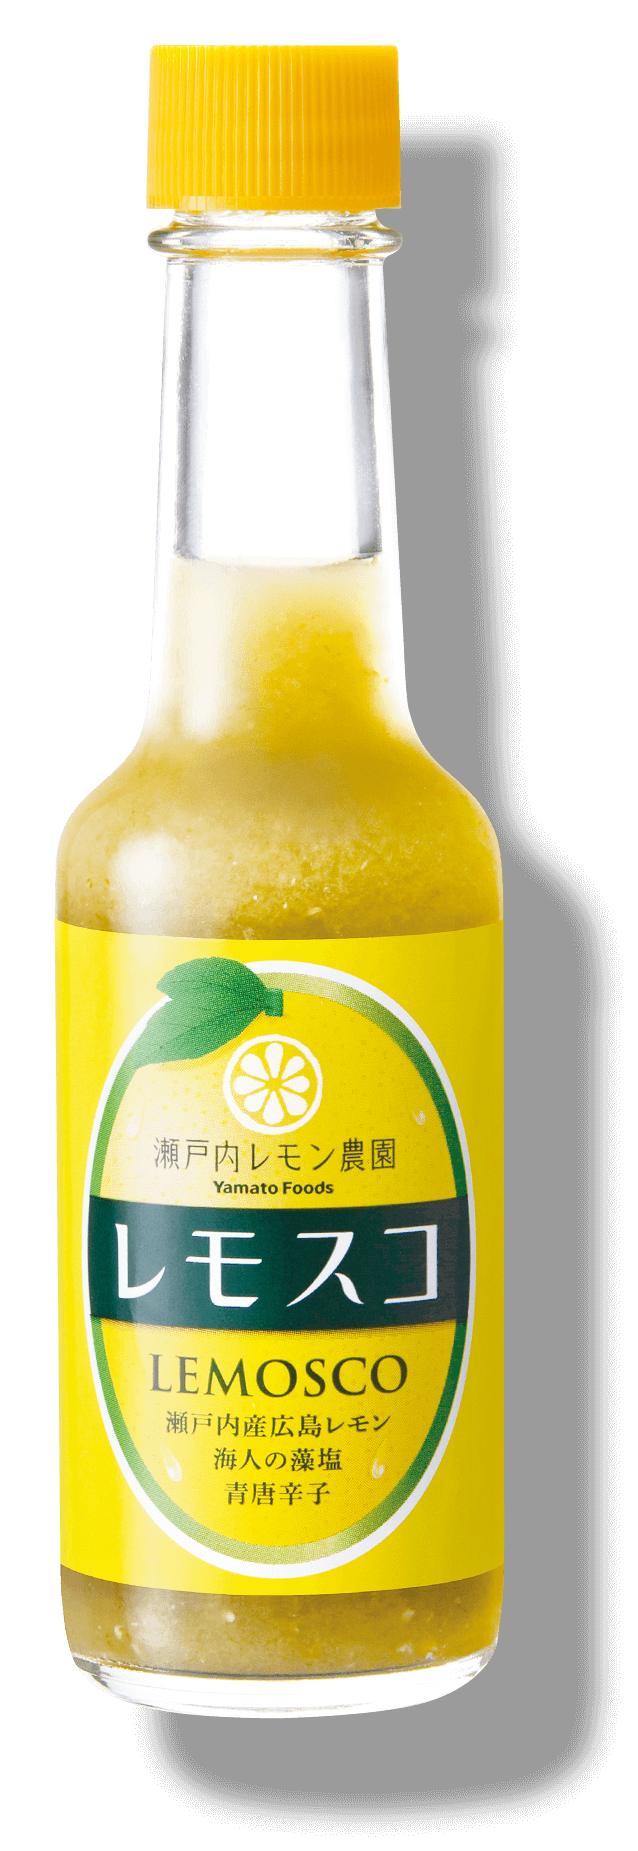 すっぱ辛い新感覚調味料 レモスコ 瀬戸内レモン農園